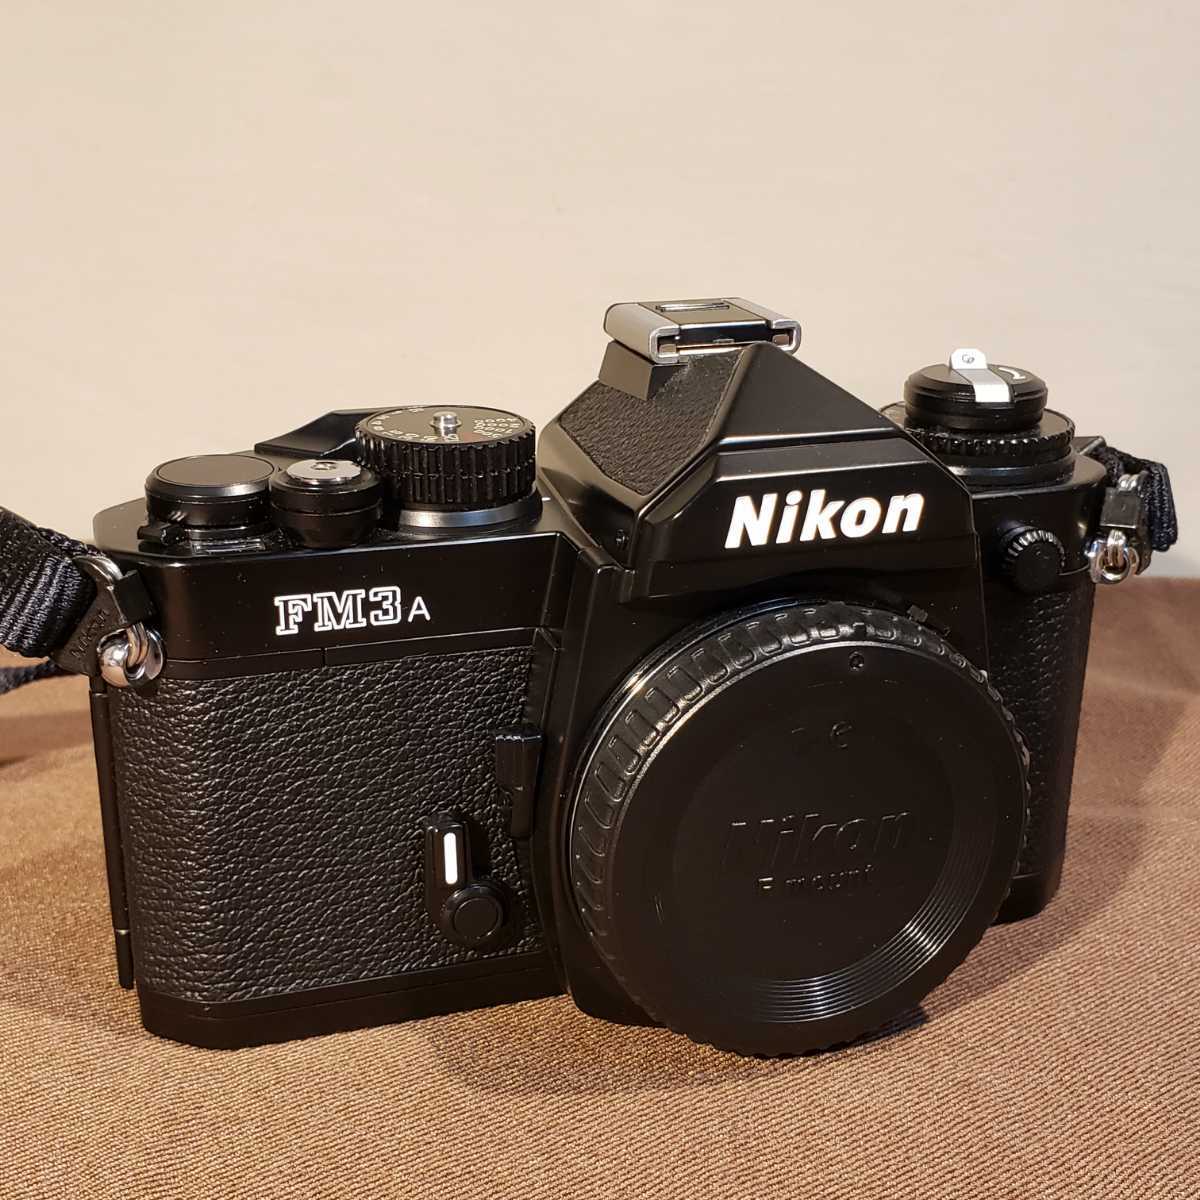 309【完動品】Nikon FM3A ボディ ブラック フィルム一眼レフカメラ ニコン 本体